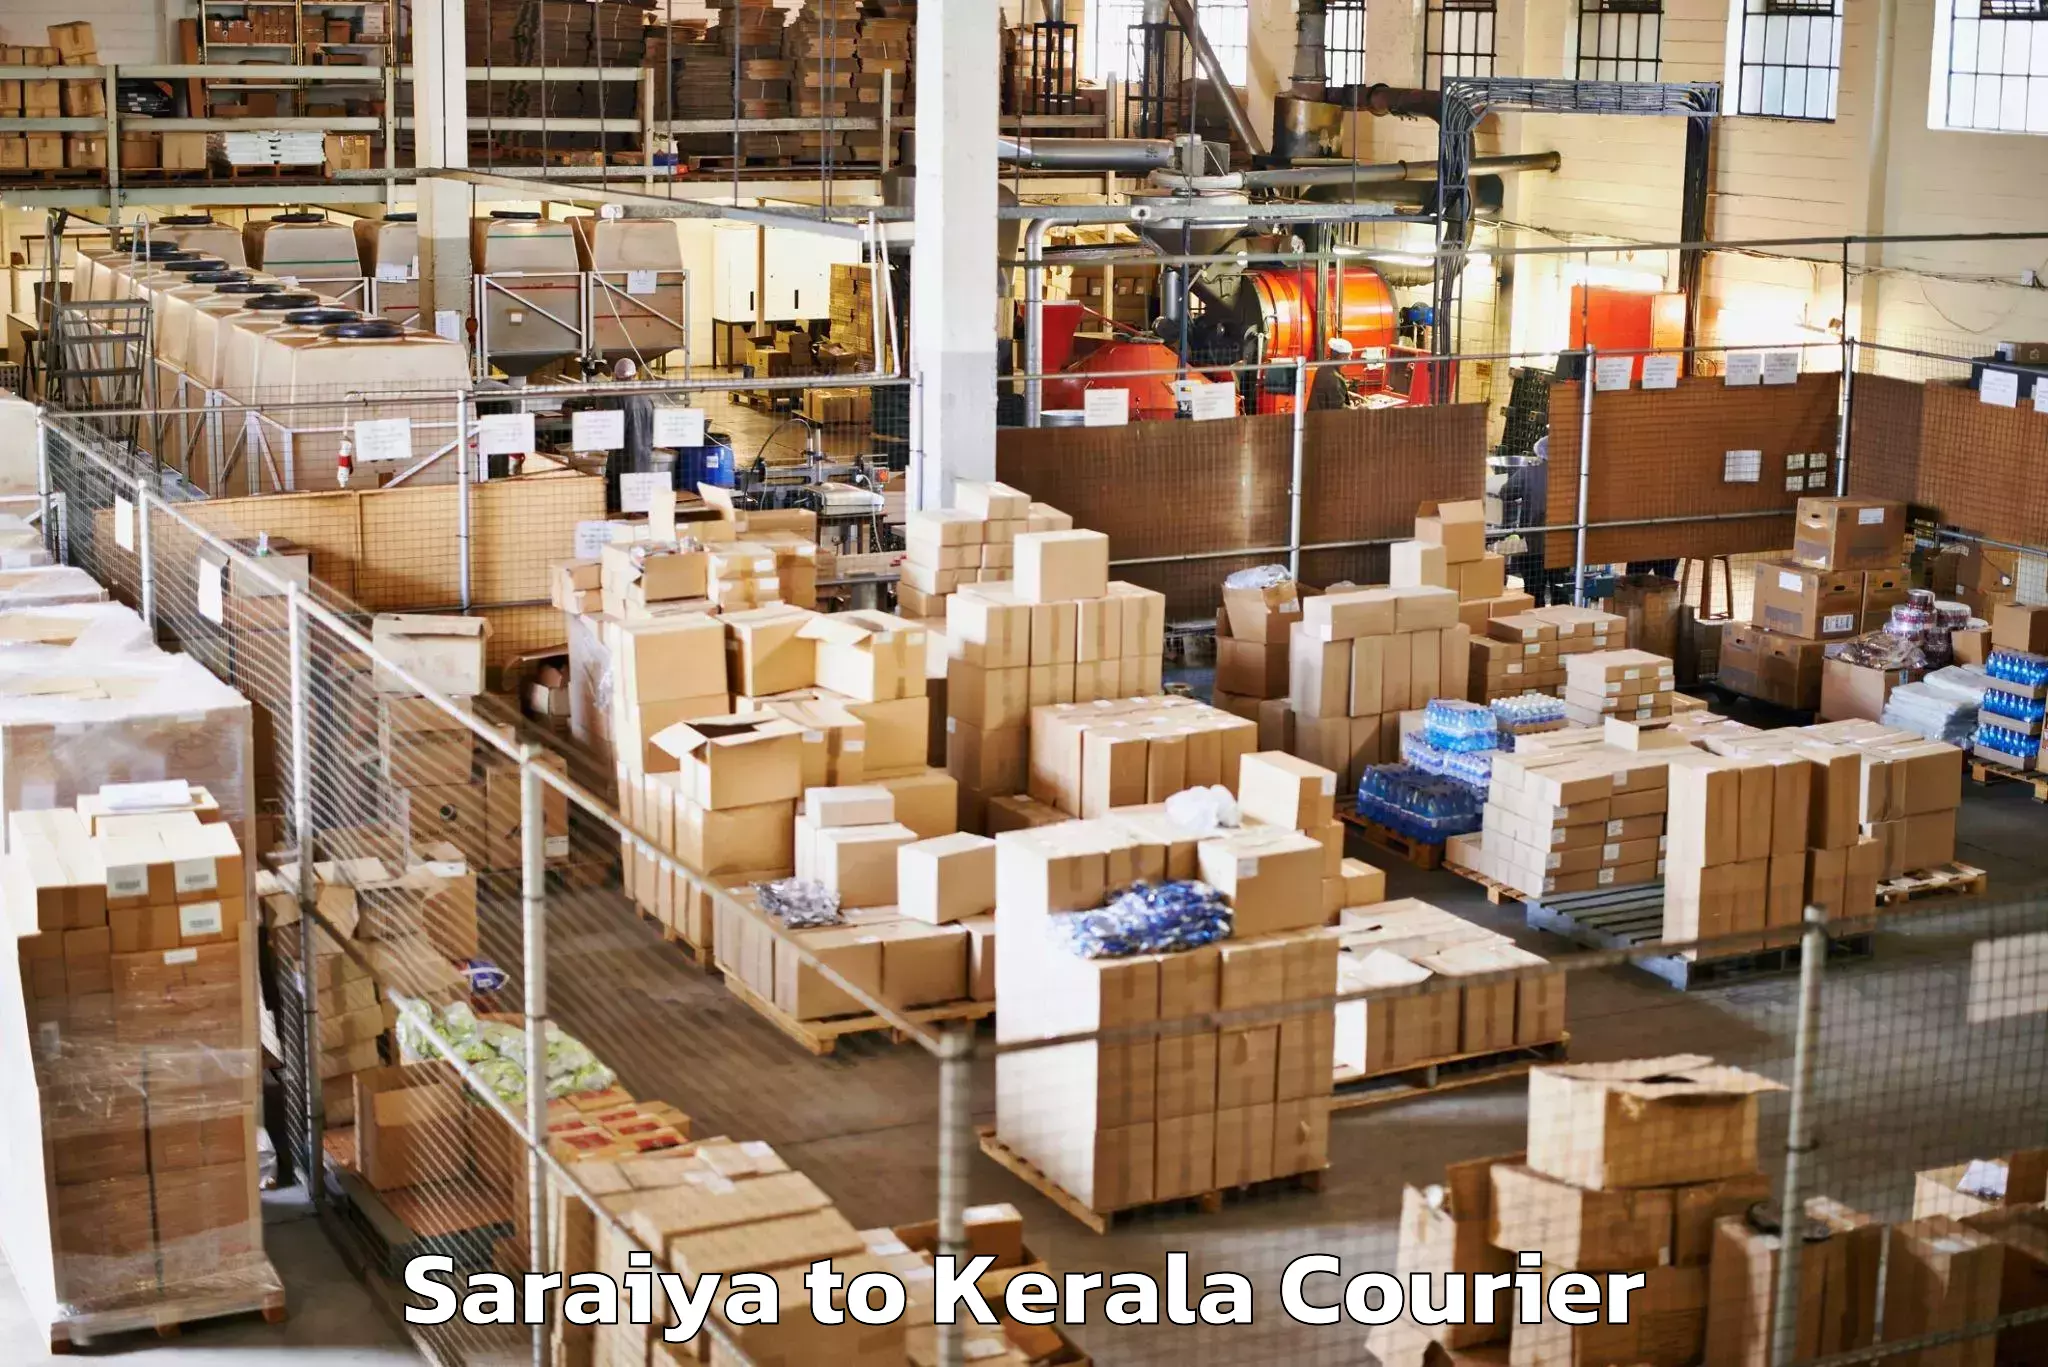 Baggage transport network Saraiya to Kakkayam